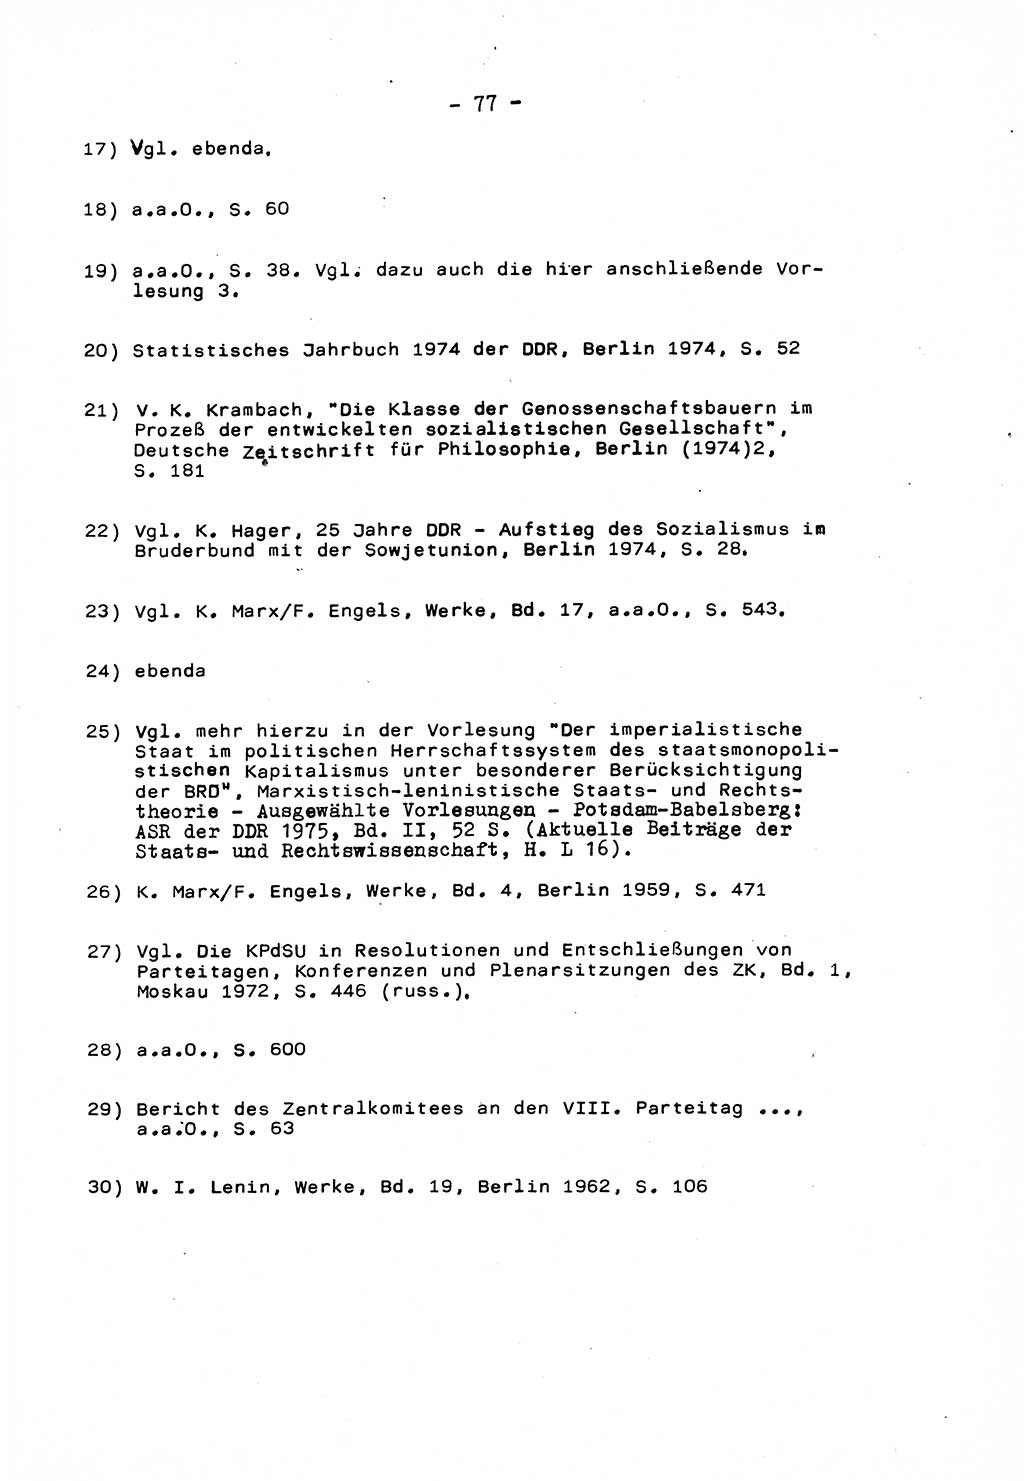 Marxistisch-leninistische Staats- und Rechtstheorie [Deutsche Demokratische Republik (DDR)] 1975, Seite 77 (ML St.-R.-Th. DDR 1975, S. 77)